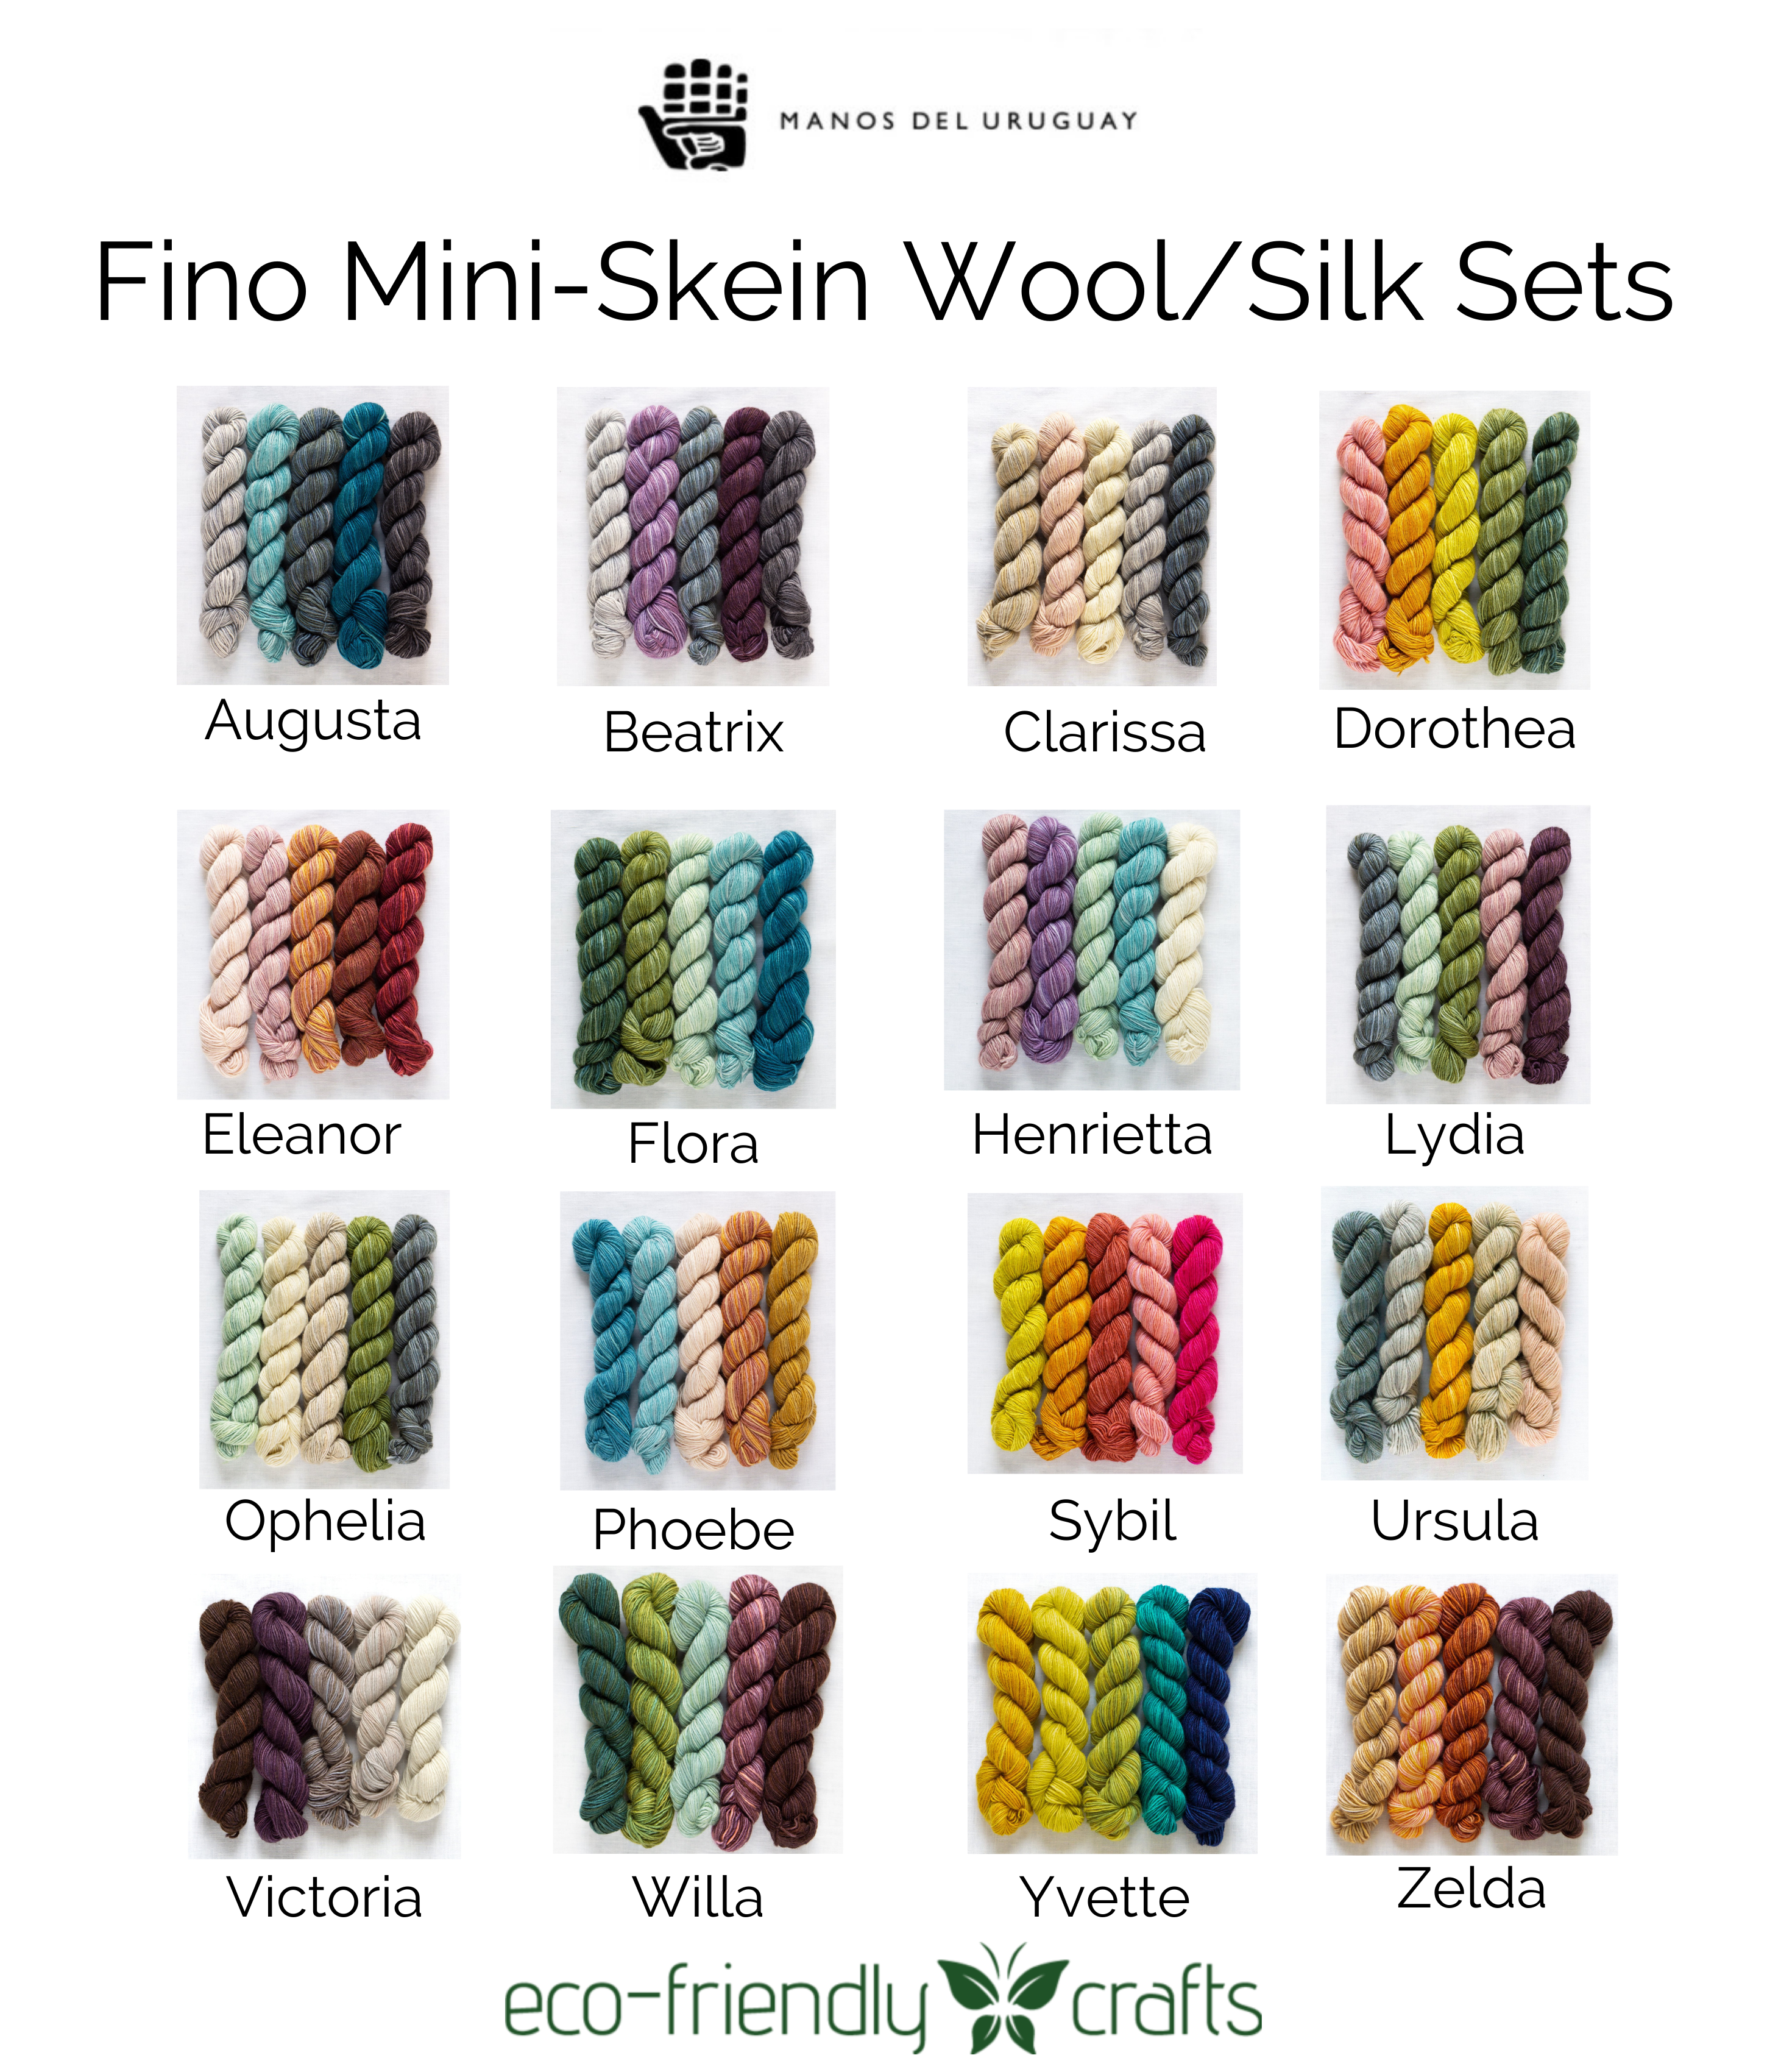 Manos Del Uruguay Fino Wool and Silk Mini-Skein Kit